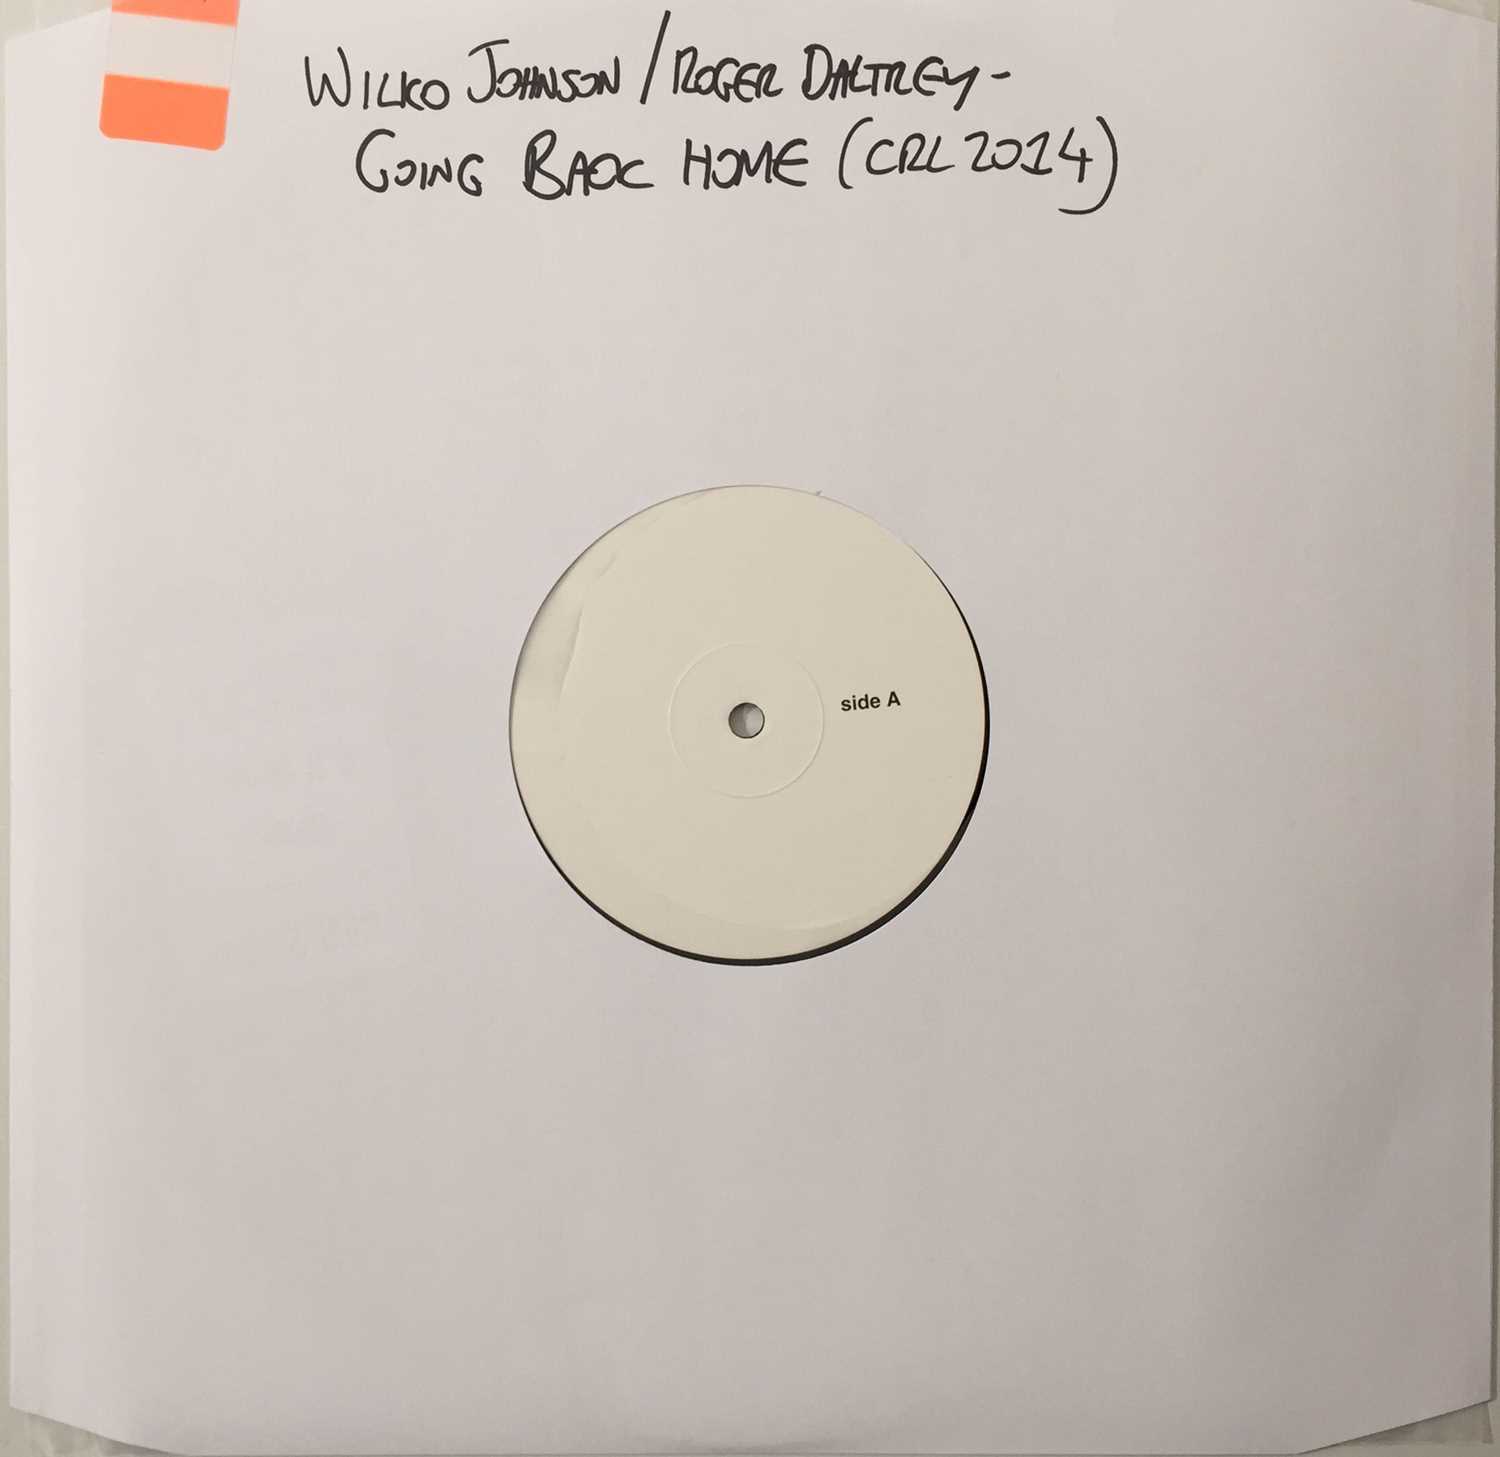 Lot 42 - WILKO JOHNSON / ROGER DALTREY - GOING BACK HOME (2014 WHITE LABEL TEST PRESSING - CRL2014)